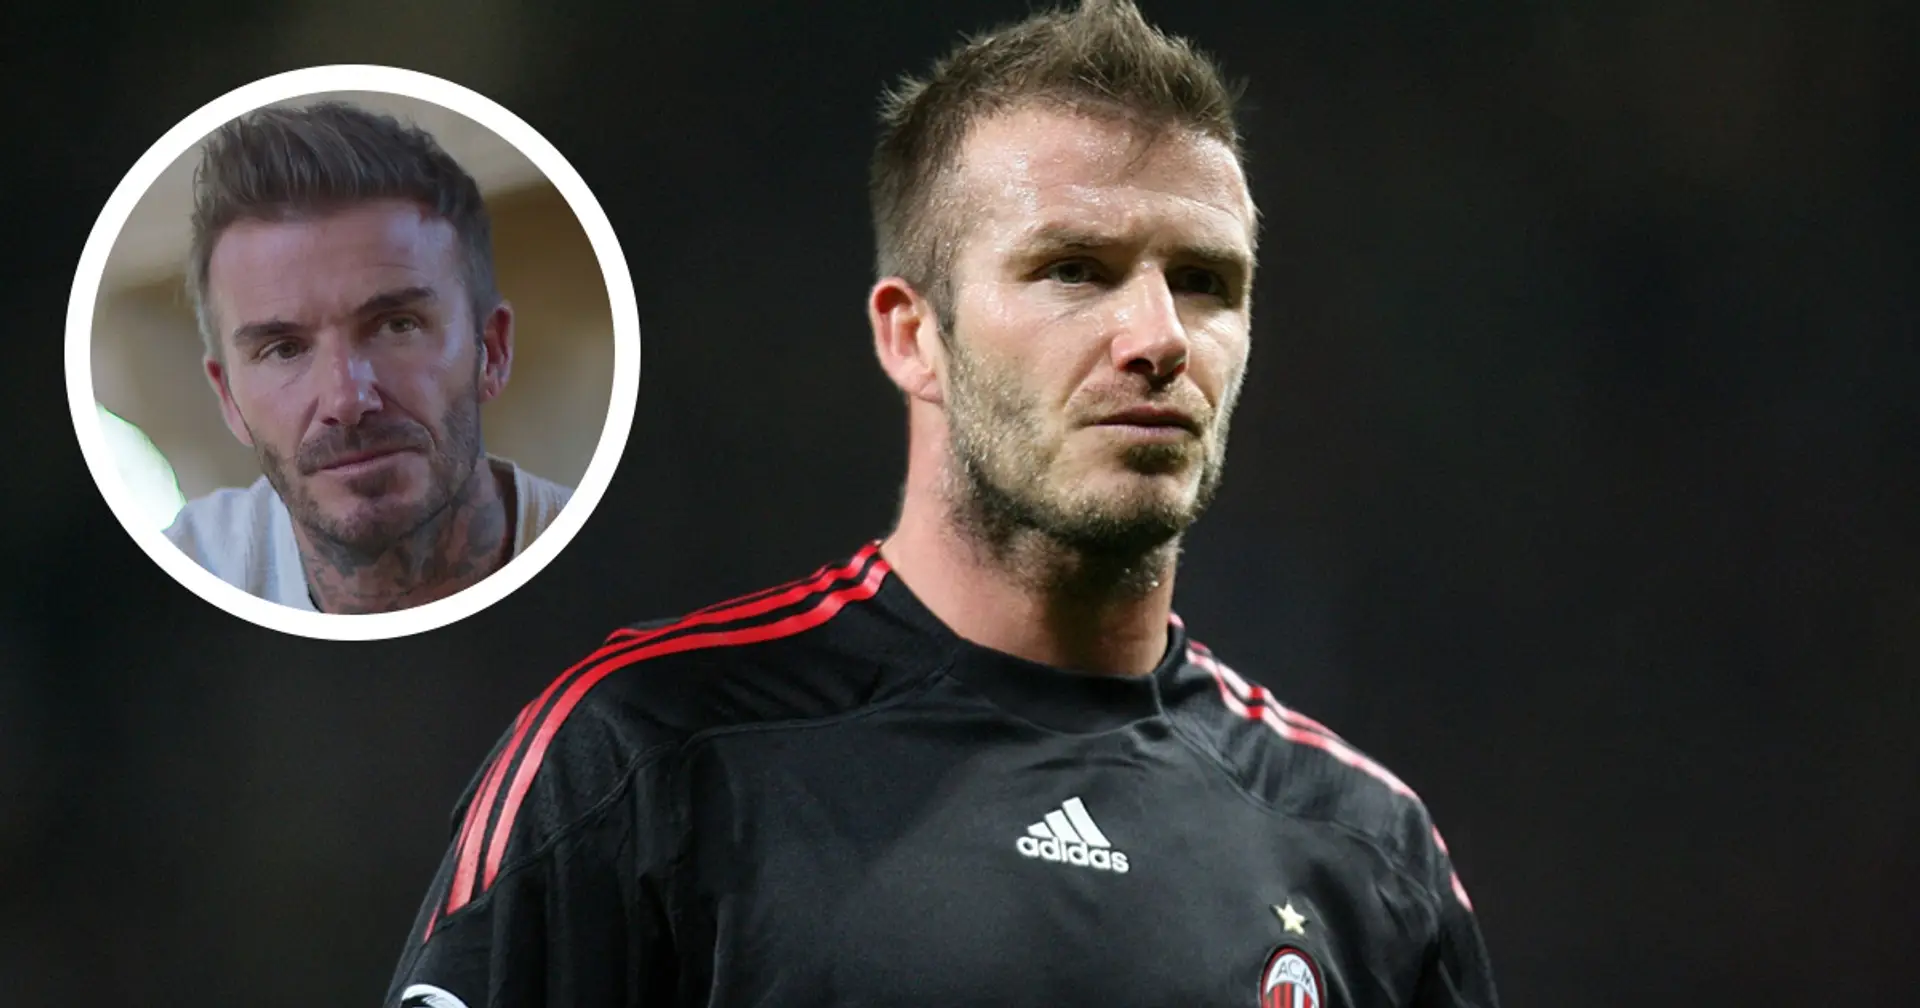 "Avrei voluto restare": l'ex Milan Beckham svela un retroscena sul suo addio ai Rossoneri